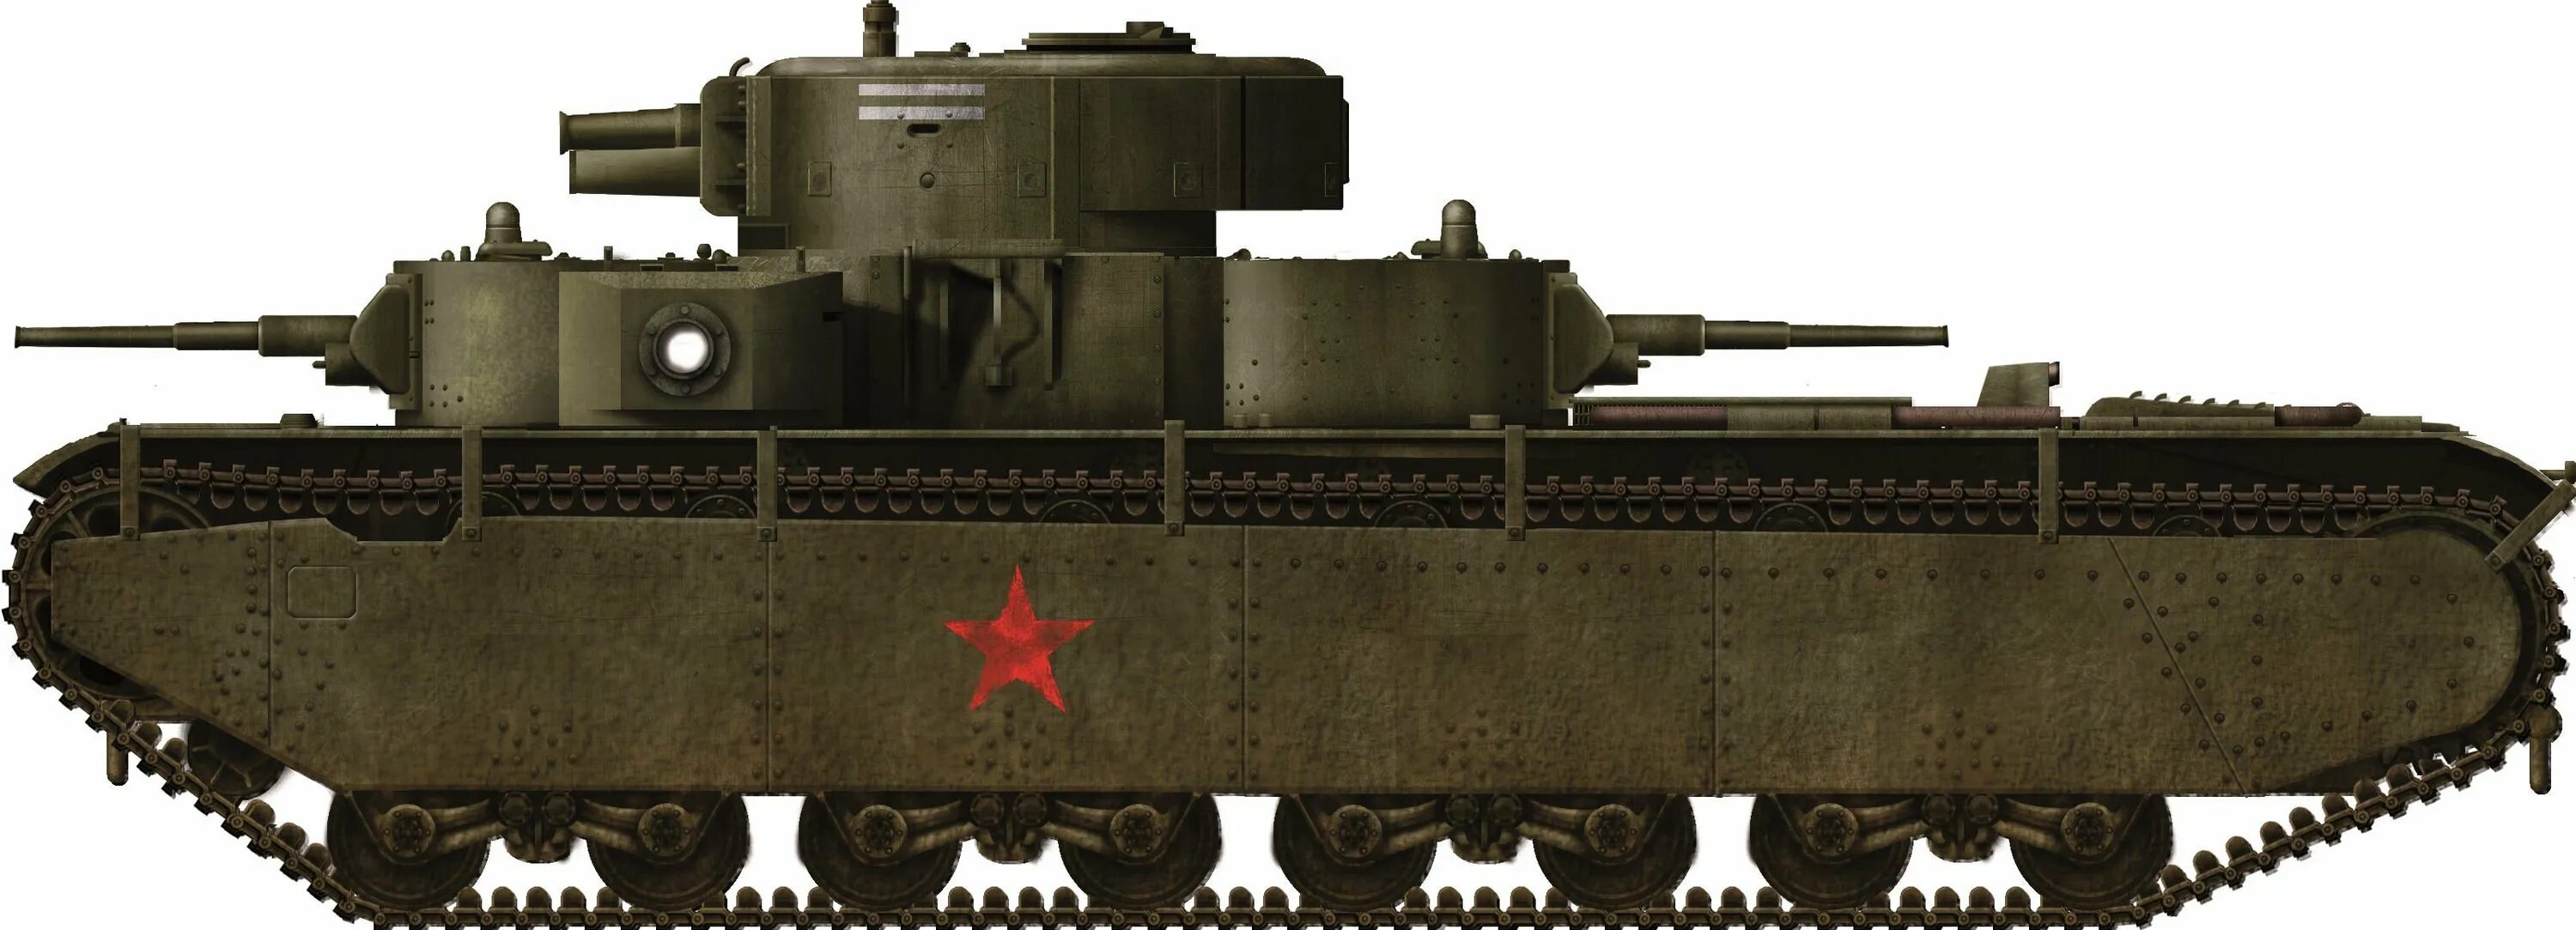 Бок ис. Т-35 танк Геранд. Т-35 вар Тандер. Т-35бм. T35 в вар Тандер.